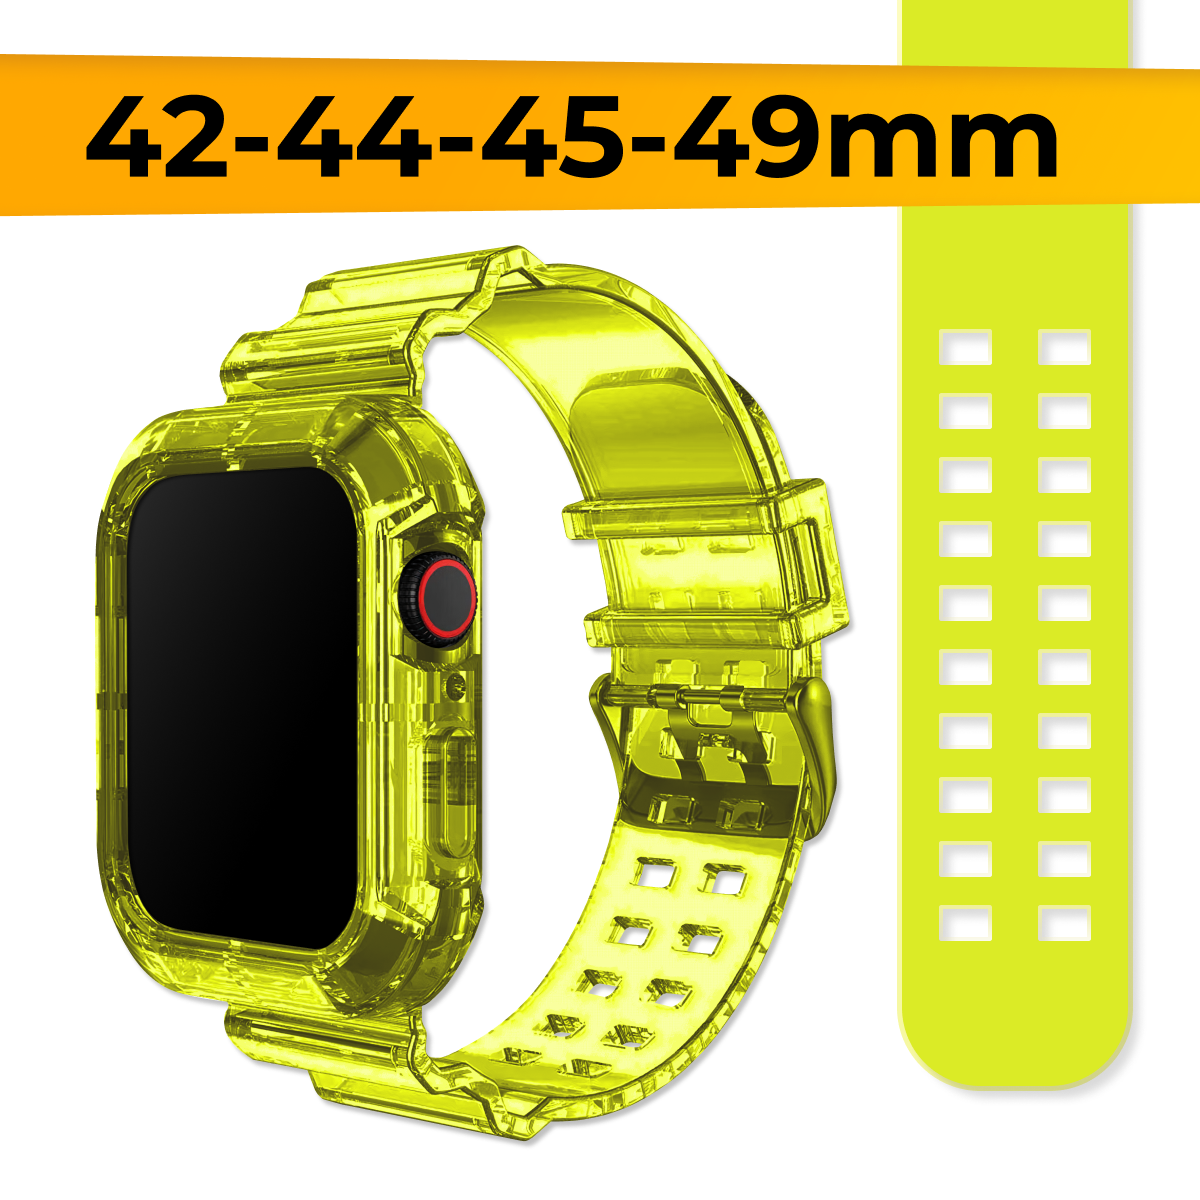 Прозрачный силиконовый ремешок для Apple Watch 1-9, SE, Ultra, 42-44-45-49 mm / Сменный браслет на часы Эпл Вотч Серии 1-9, СE, Ультра / Желтый